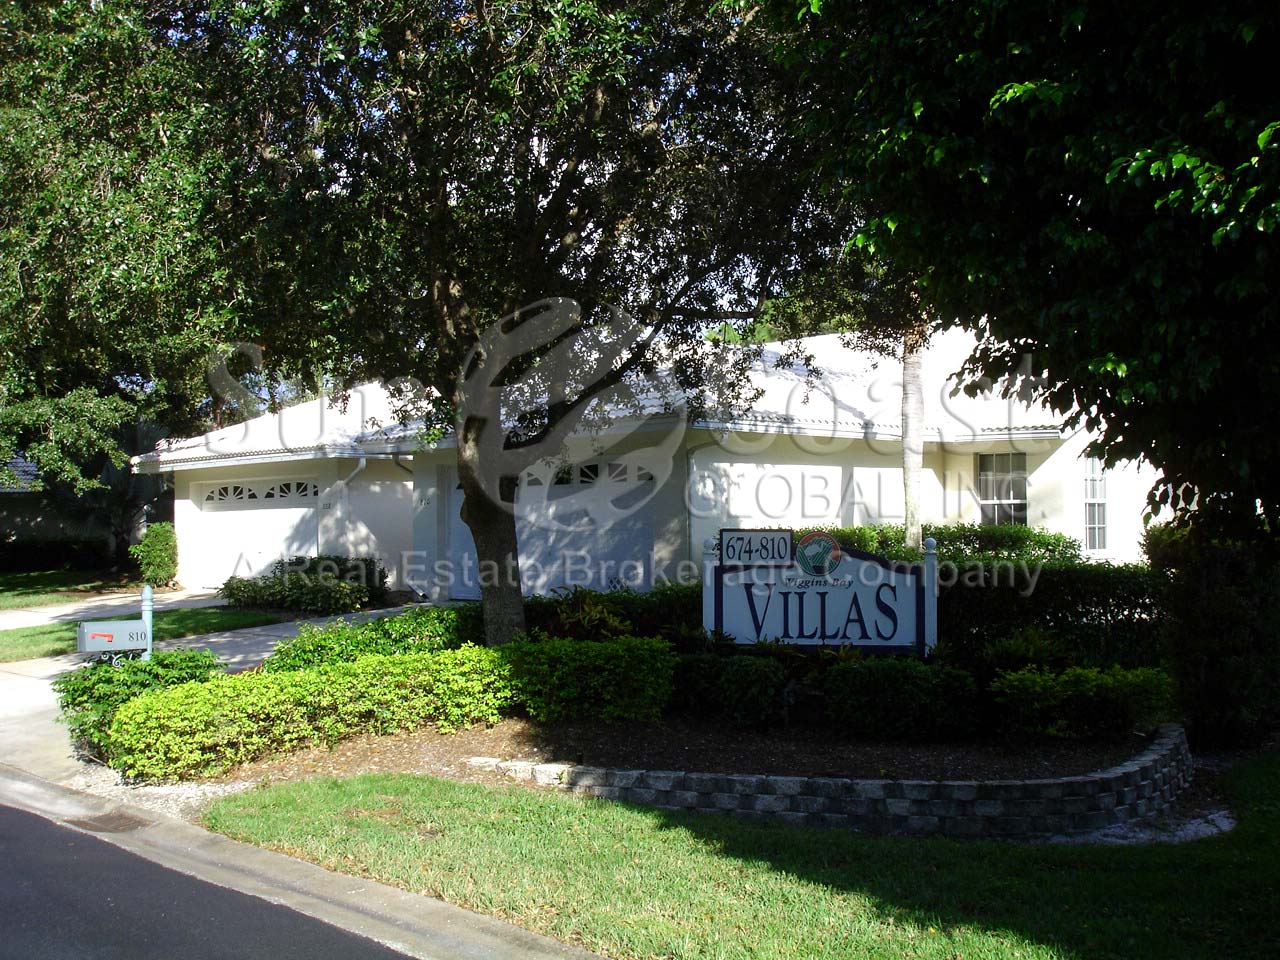 Wiggins Bay Villas Entrance